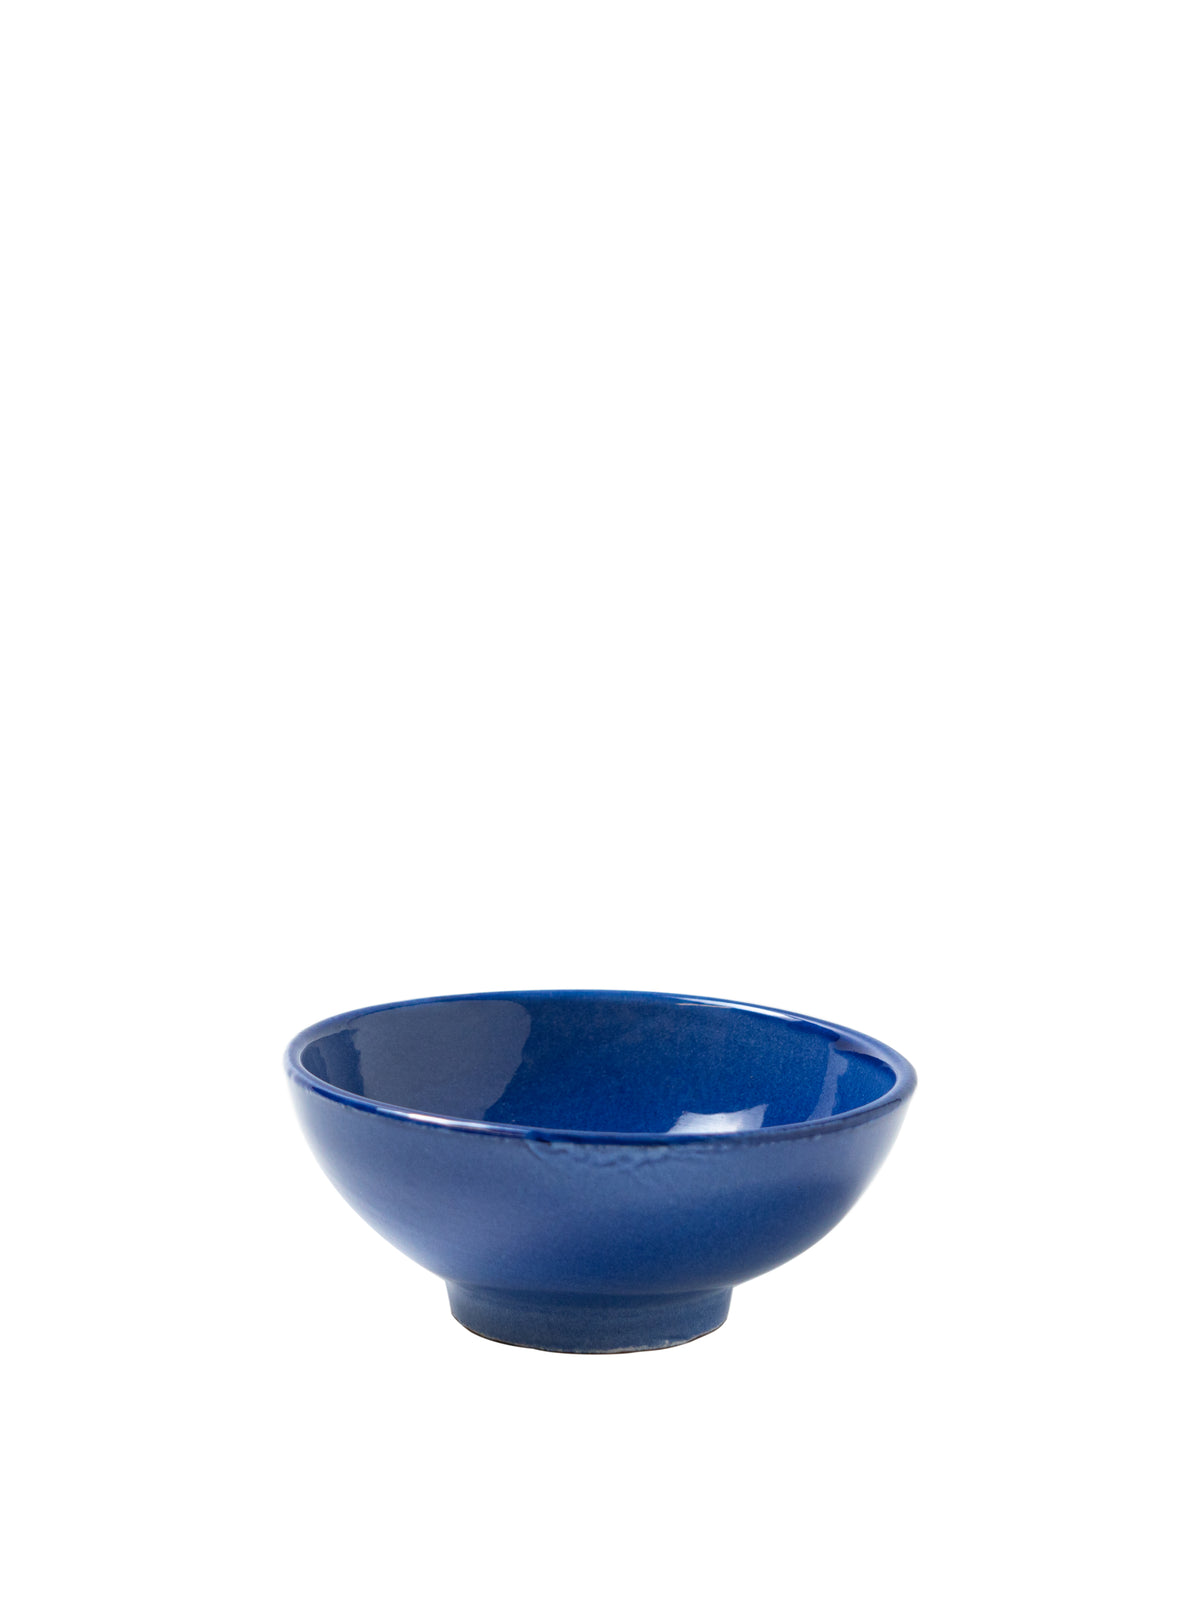 Casa Azul Small Bowl with Blue Glaze